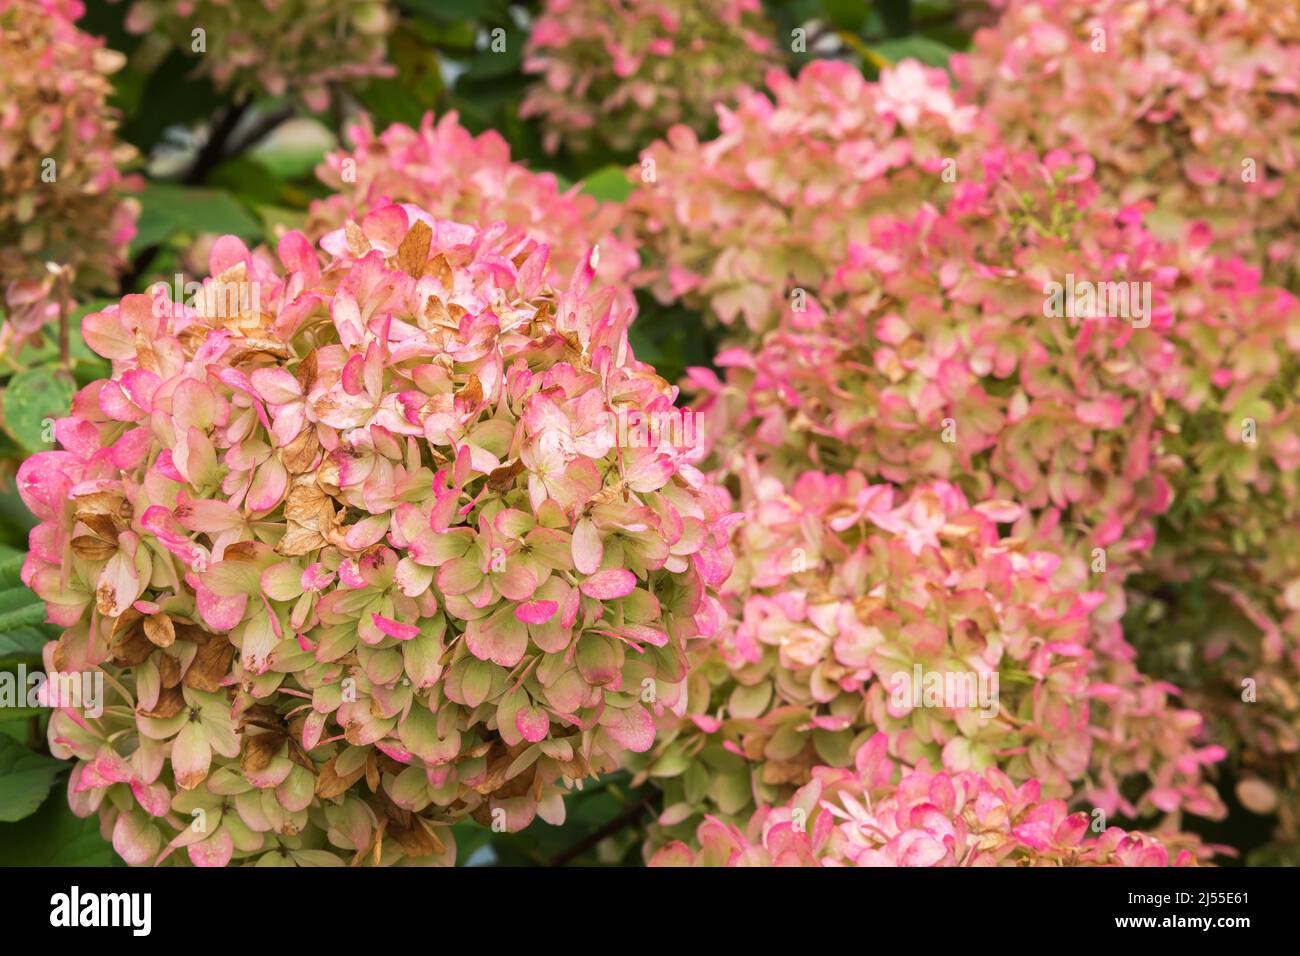 Der rosa blühende Hortensia-Strauch beginnt zu welken und wird im Herbst braun. Stockfoto